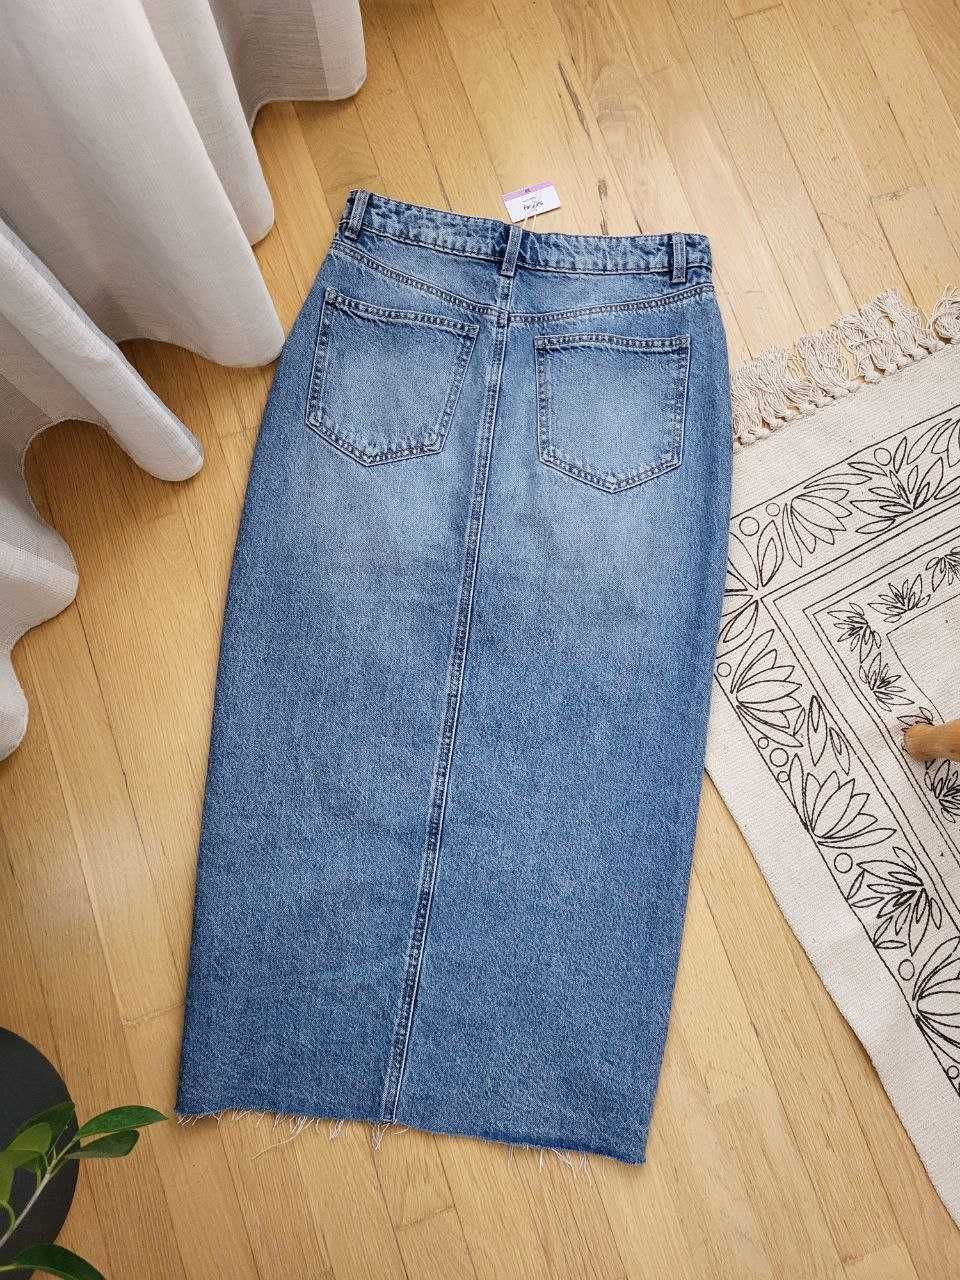 Новая голубая синяя джинсовая миди юбка с разрезом женская трендовая